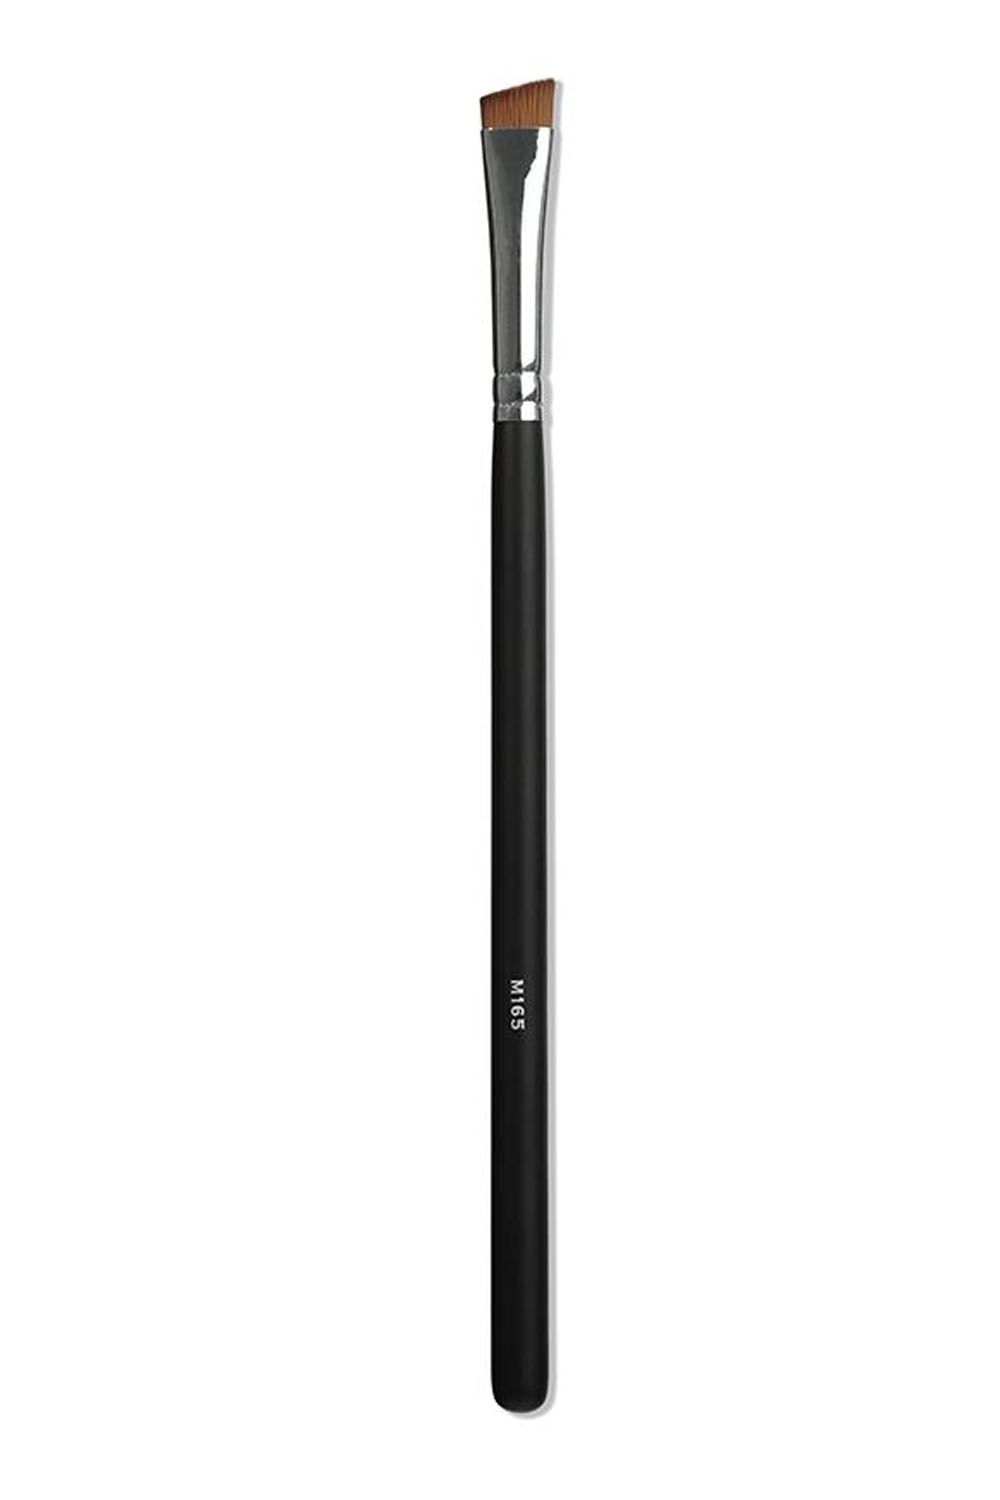 Morphe M165 Angled Liner Brush